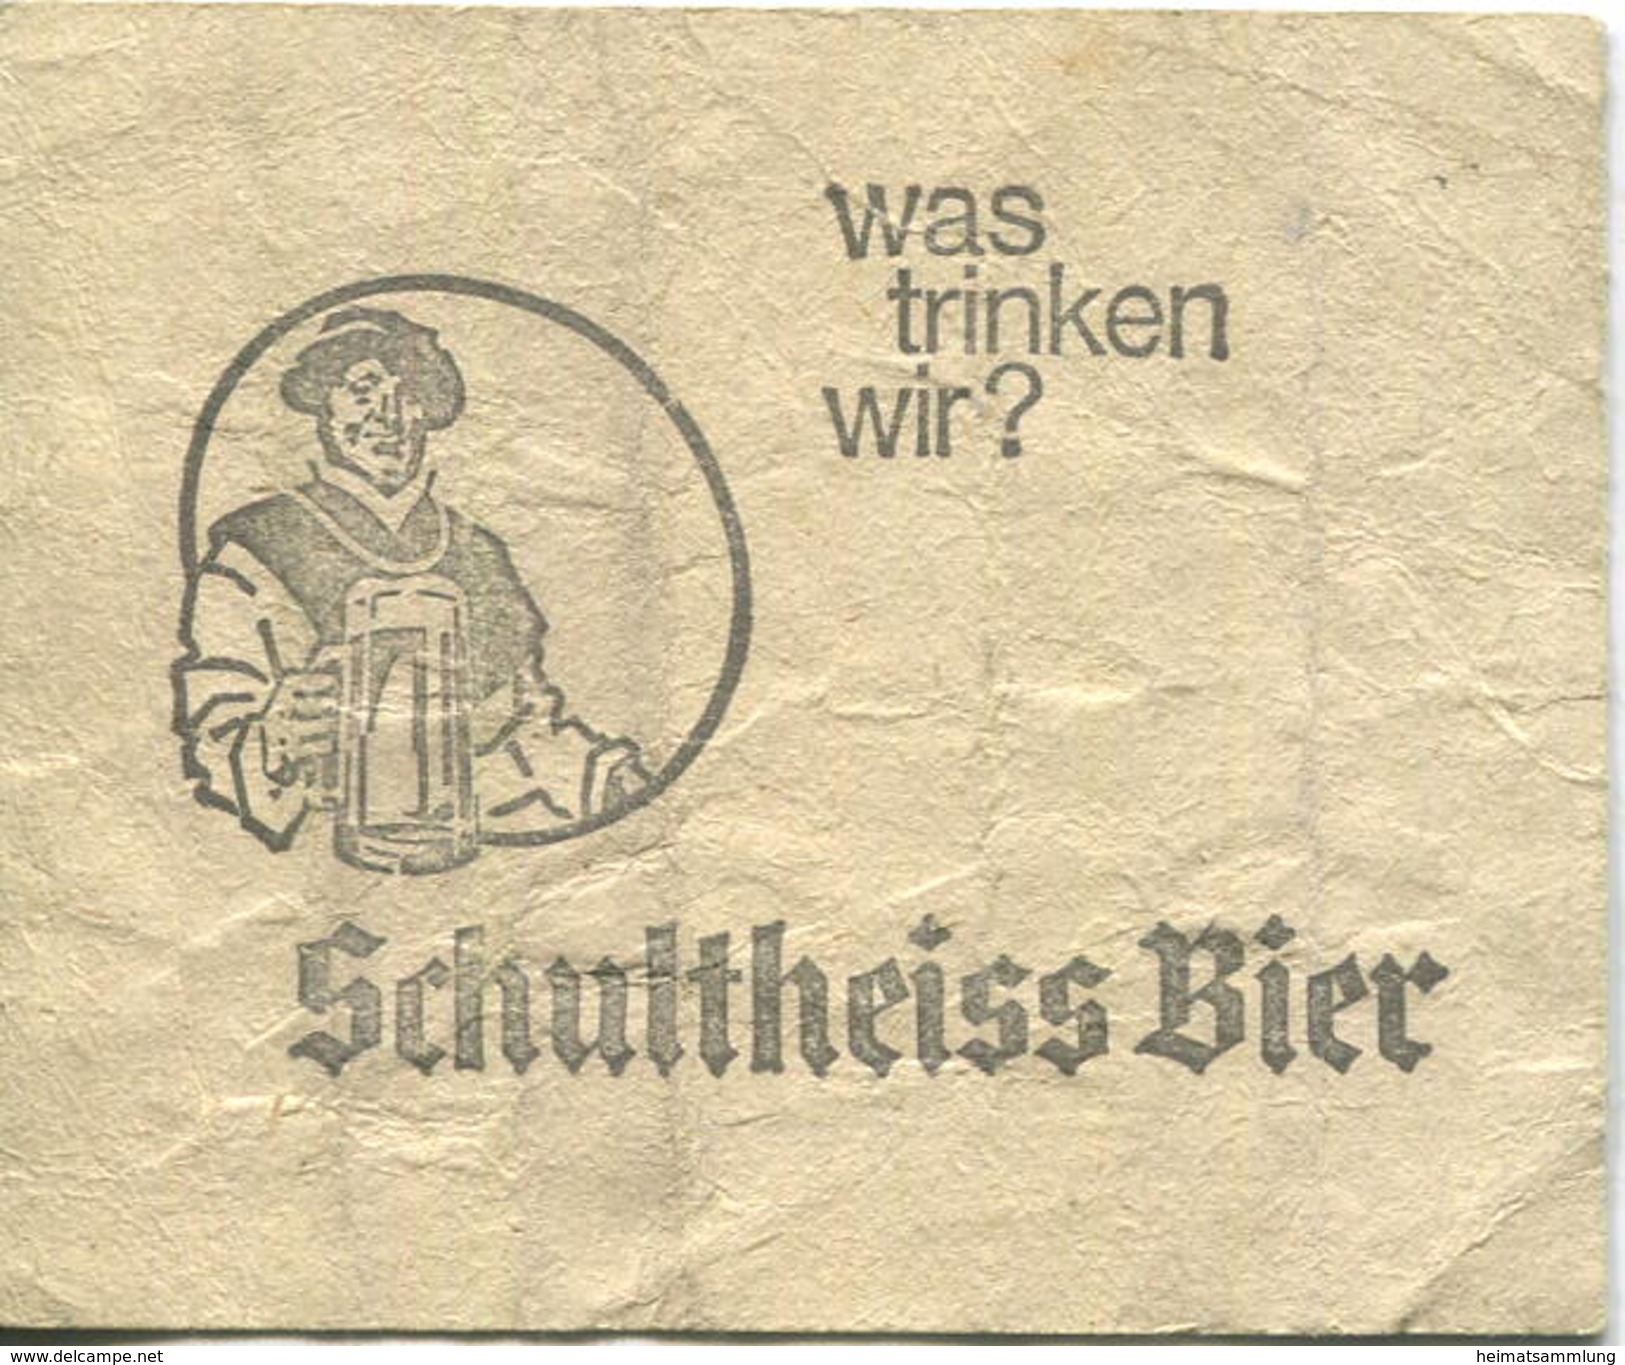 Deutschland - Berlin - Sammelkarte U-Bahn 5 Fahrten Ohne Umsteigeberechtigung 1969 - Rückseitig Werbung Schultheiss-Bier - Europa